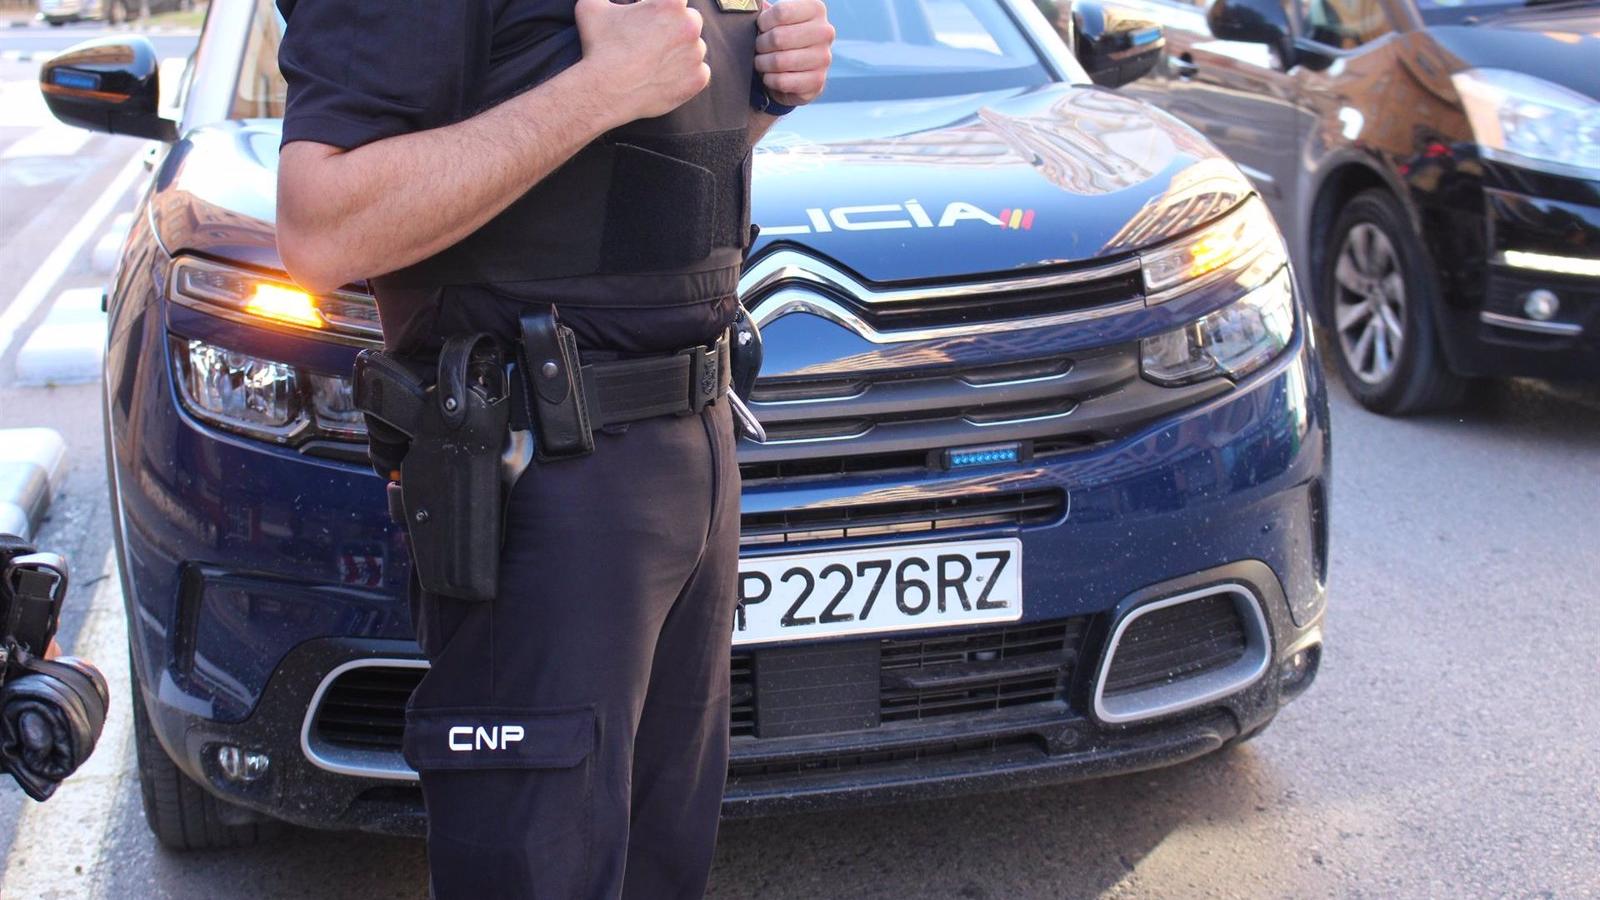  Agreden a un hombre con un arma blanca tras una discusión de tráfico en Moratalaz